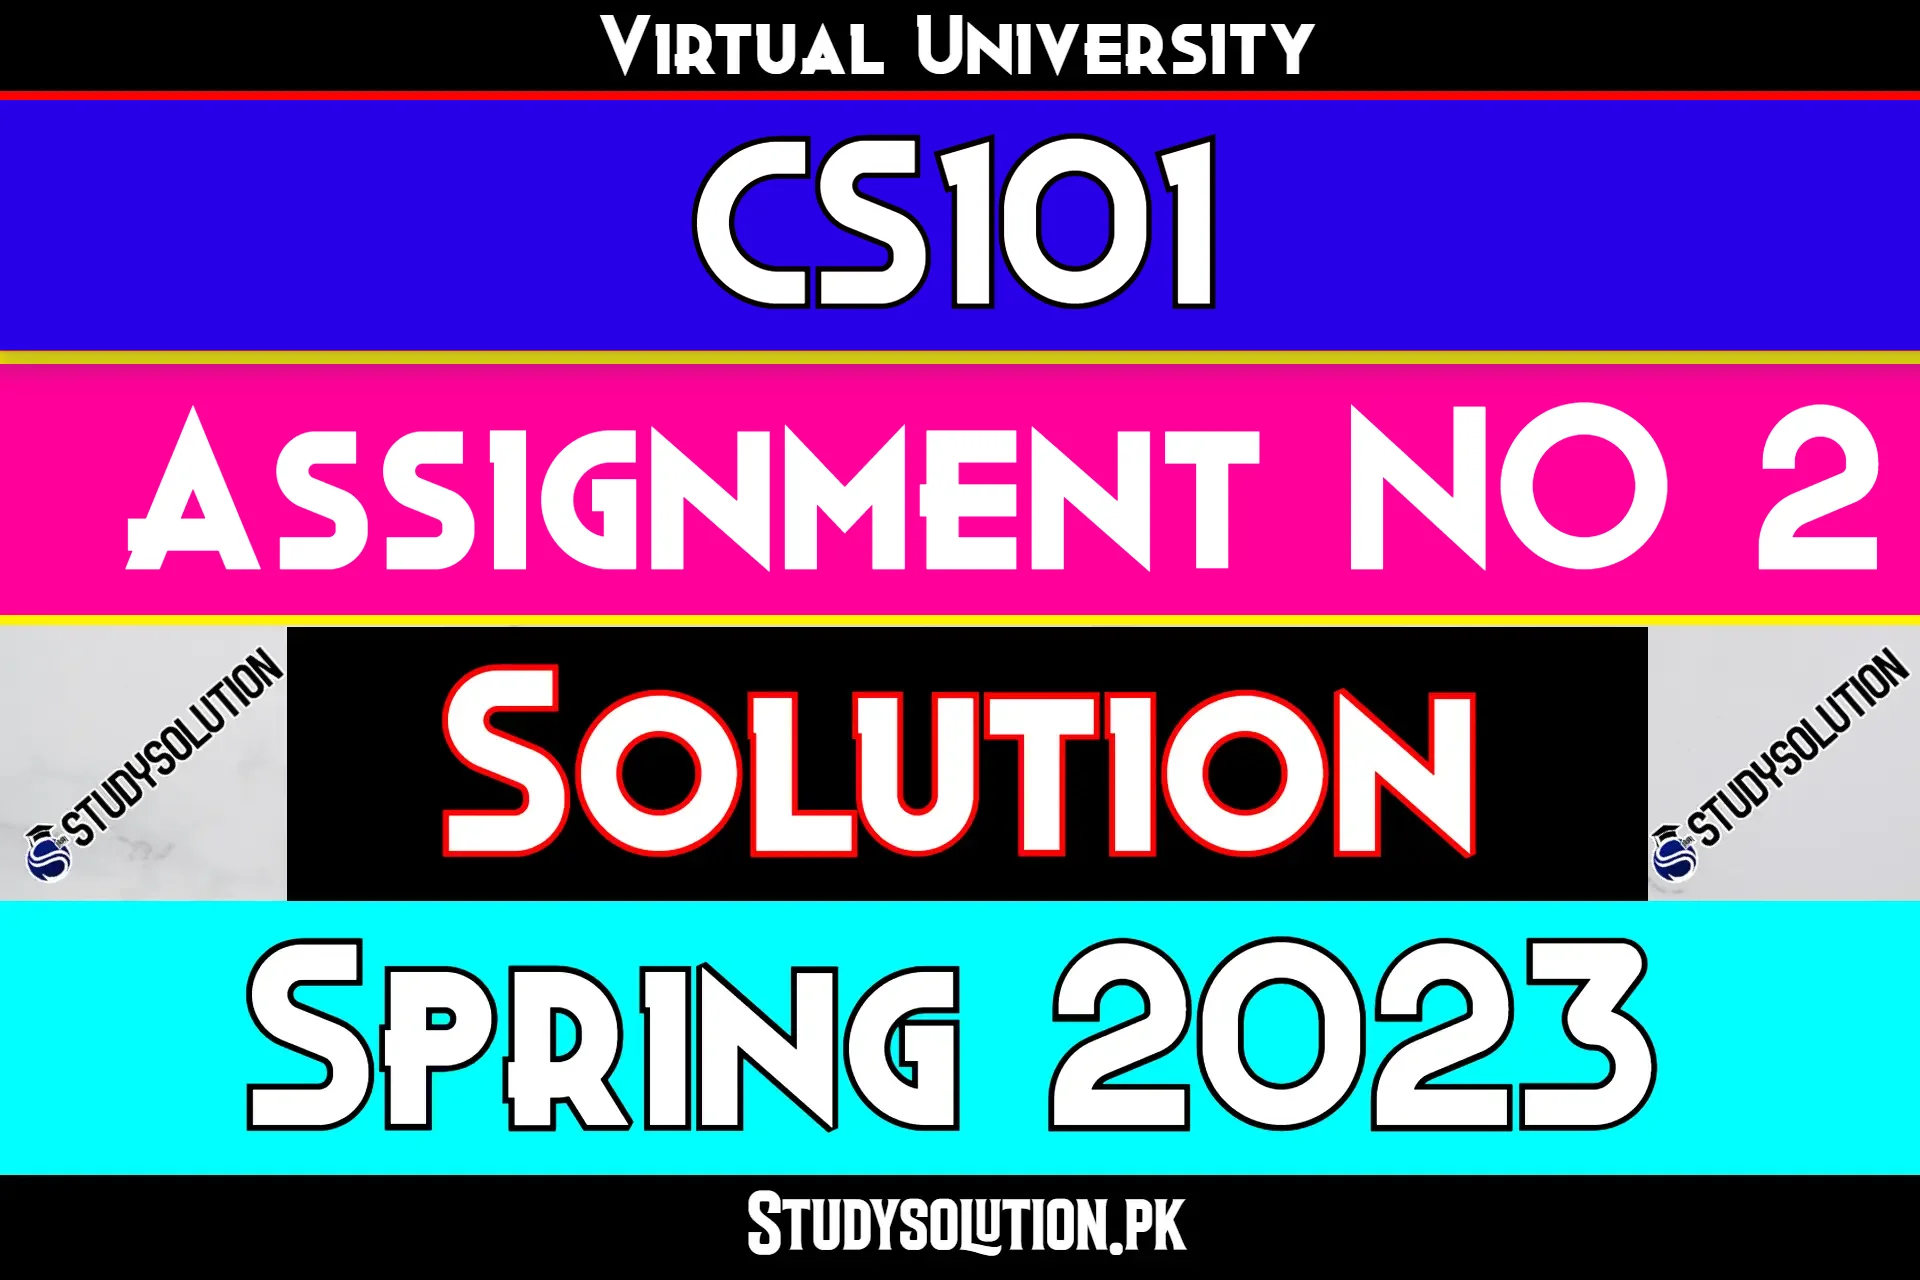 CS101 Assignment No 2 Solution Spring 2023